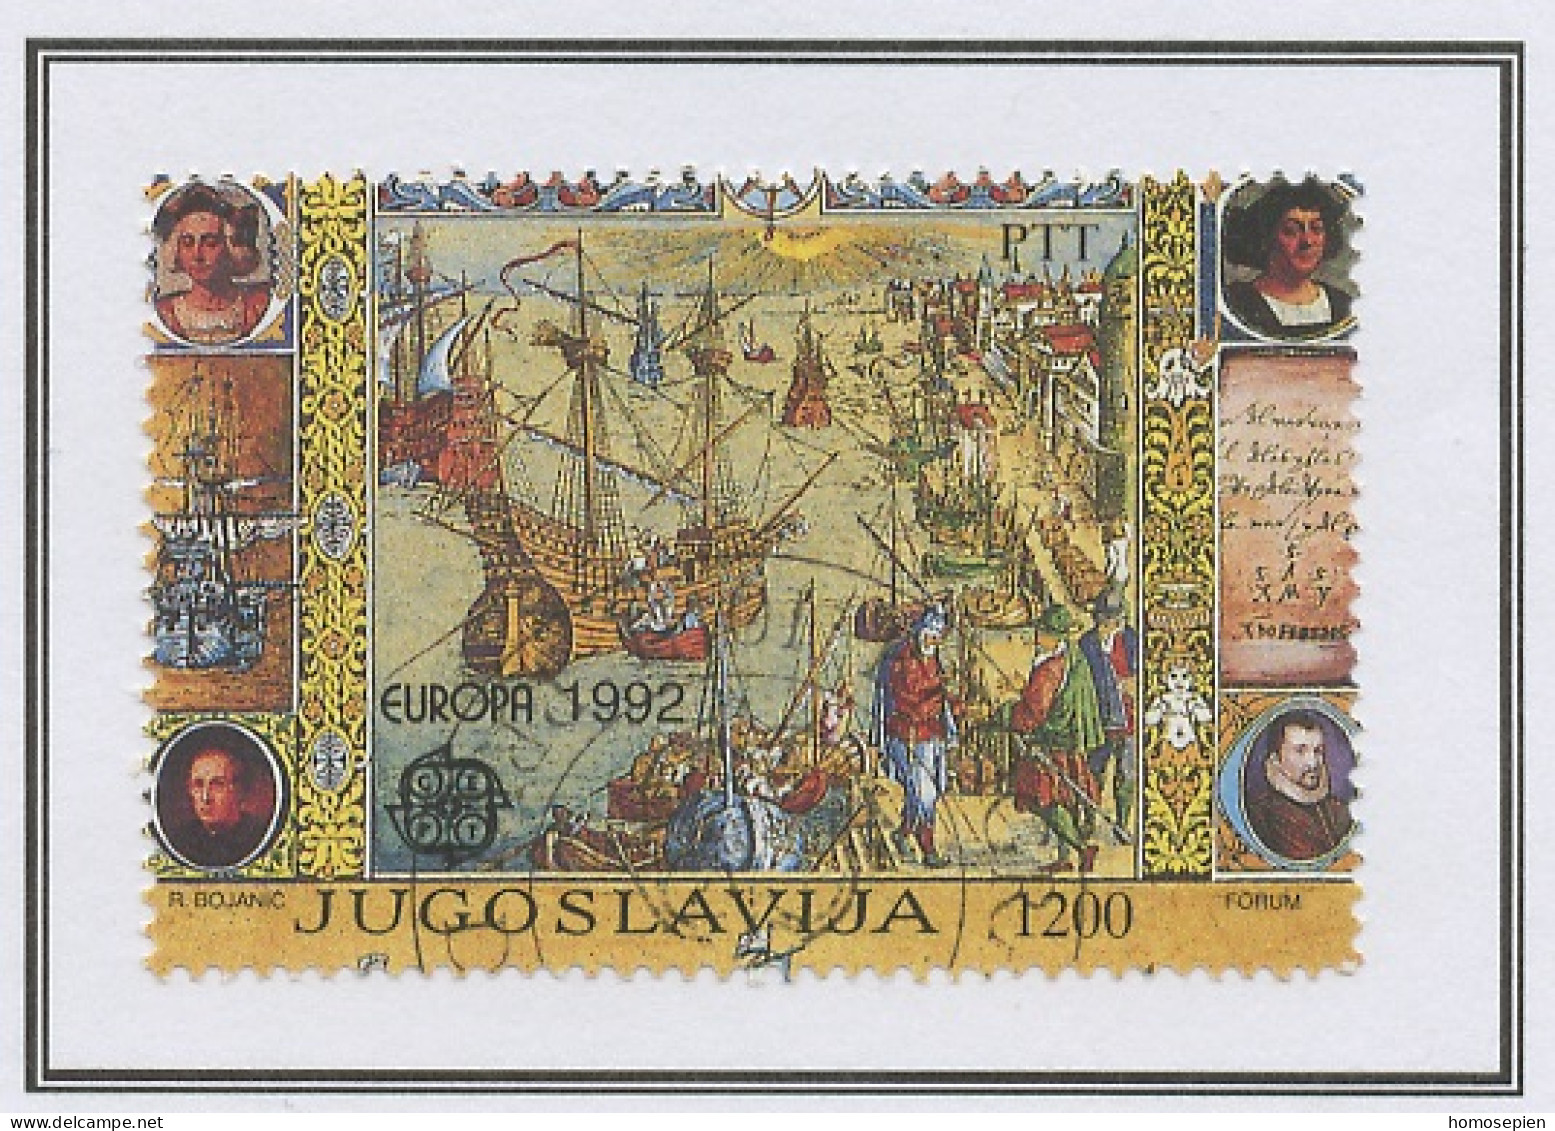 Yougoslavie - Jugoslawien - Yugoslavia 1992 Y&T N°2399 - Michel N°2536 (o) - 1200d EUROPA - Oblitérés